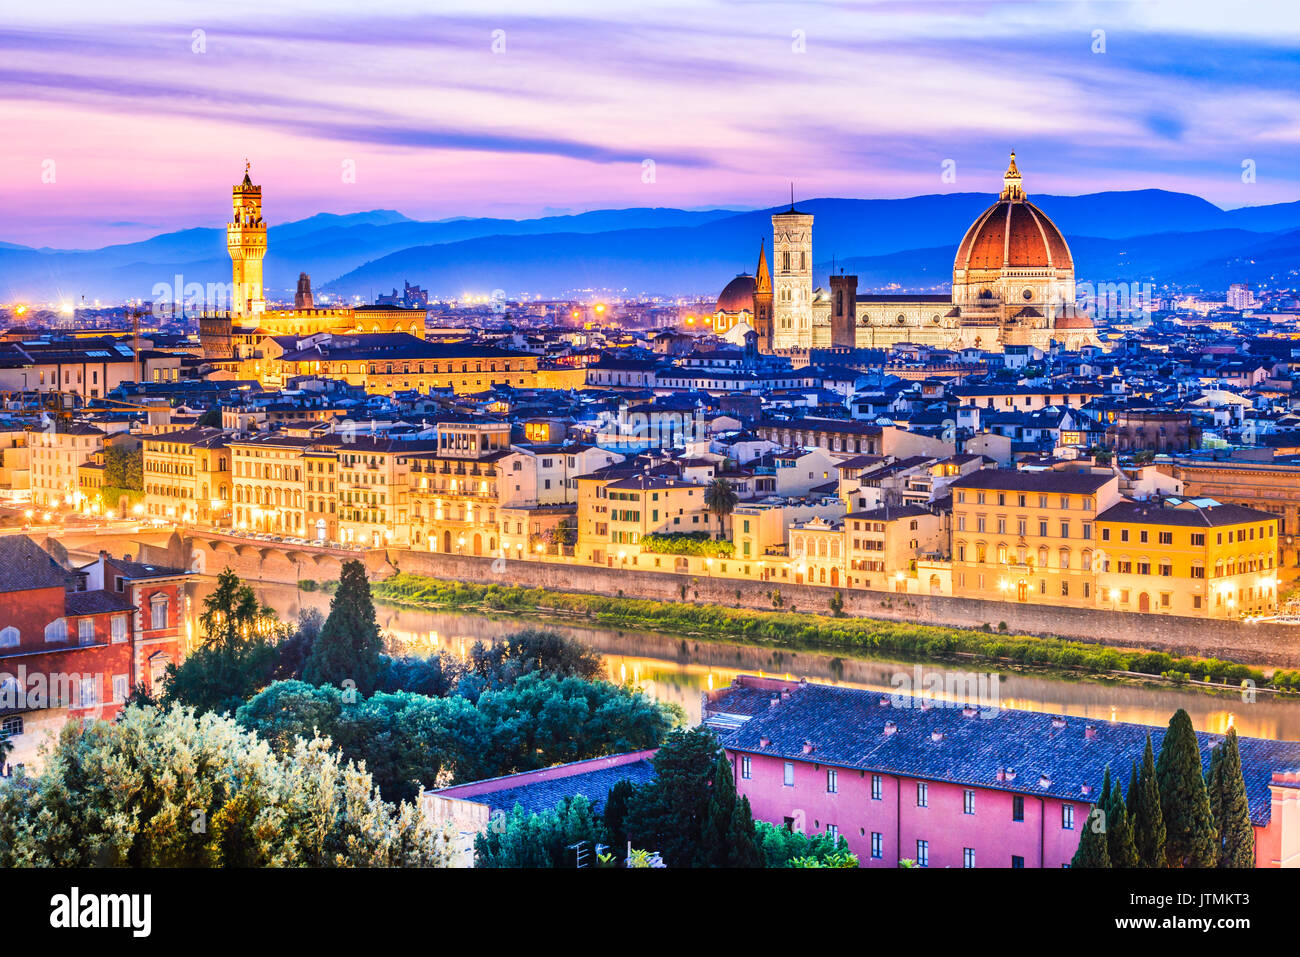 Firenze, Toscana - Paesaggio notturno con il duomo di Santa Maria del Fiore, architettura rinascimentale in Italia. Foto Stock